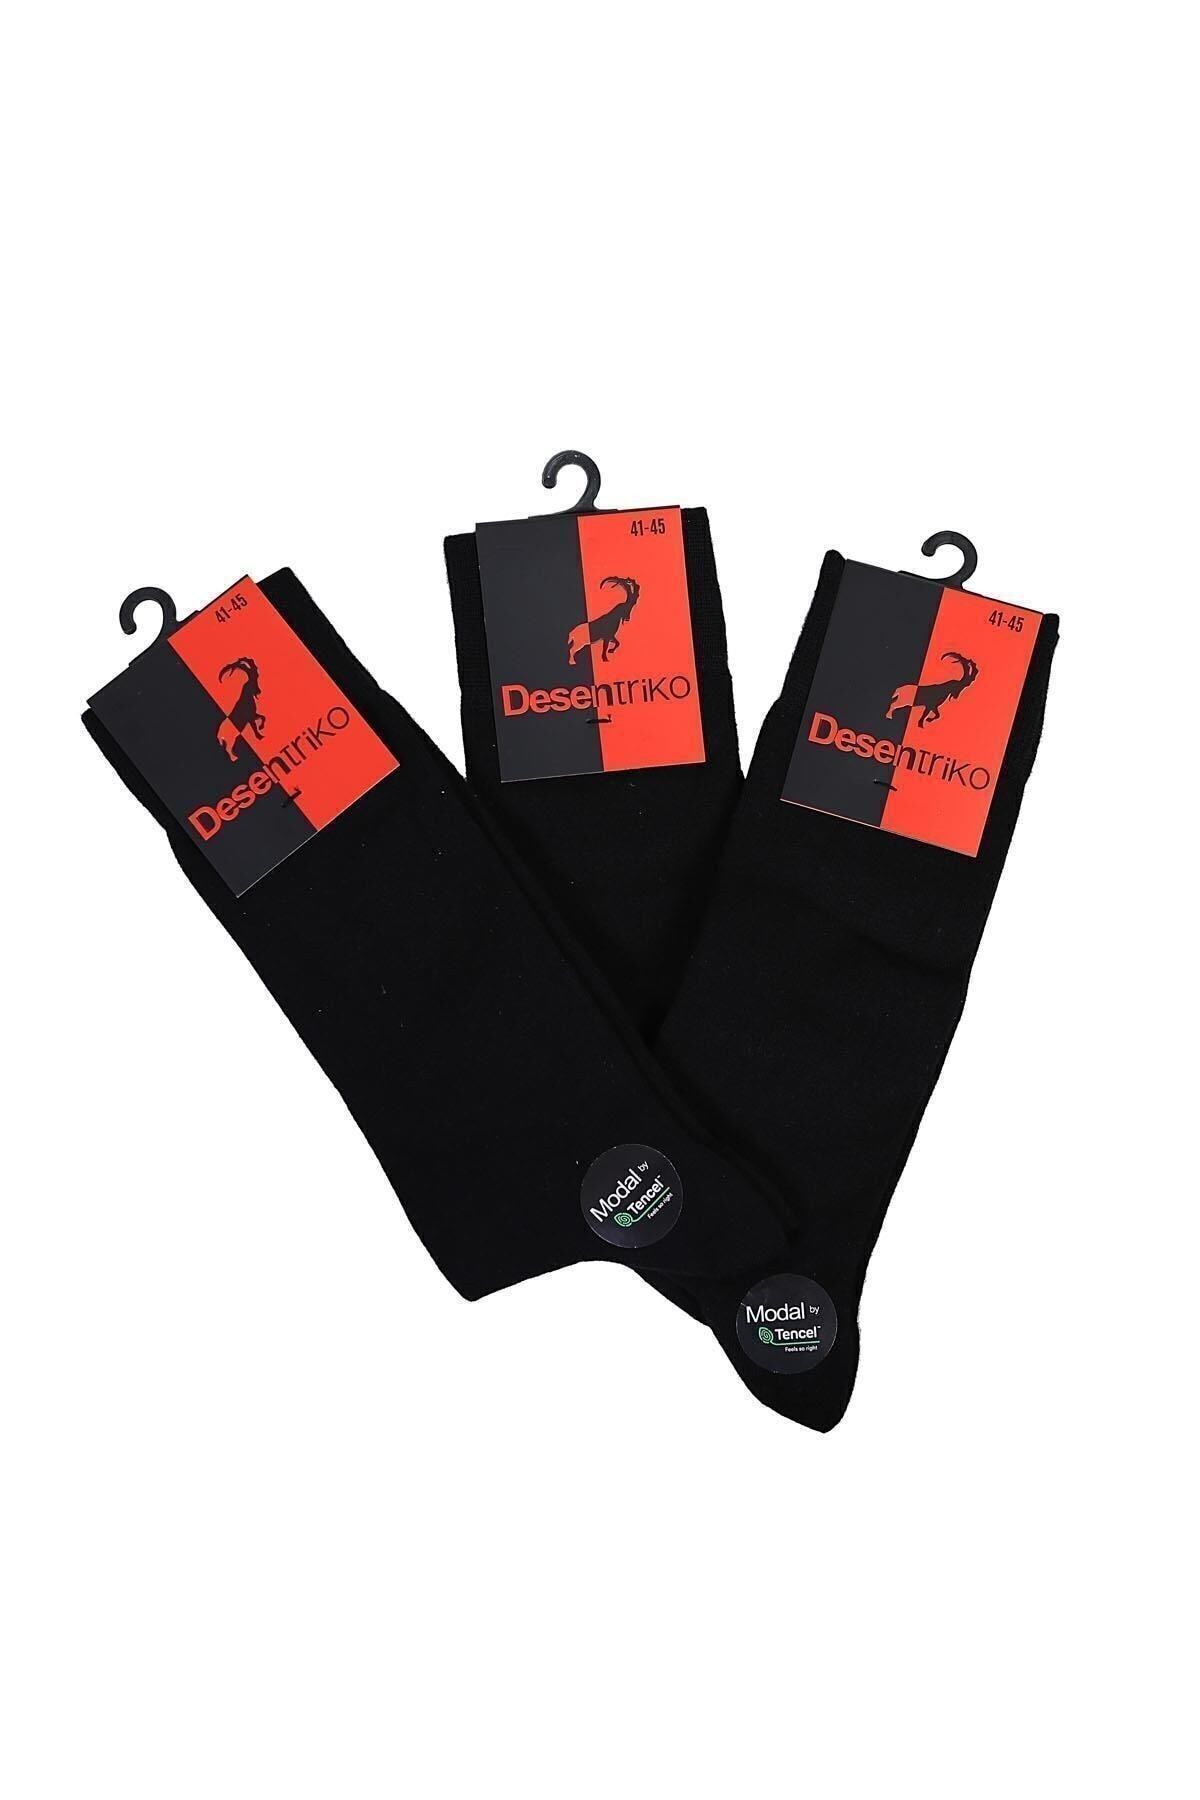 Desen Triko Erkek Düz Renk Modal 3'lü Soket Çorap Siyah